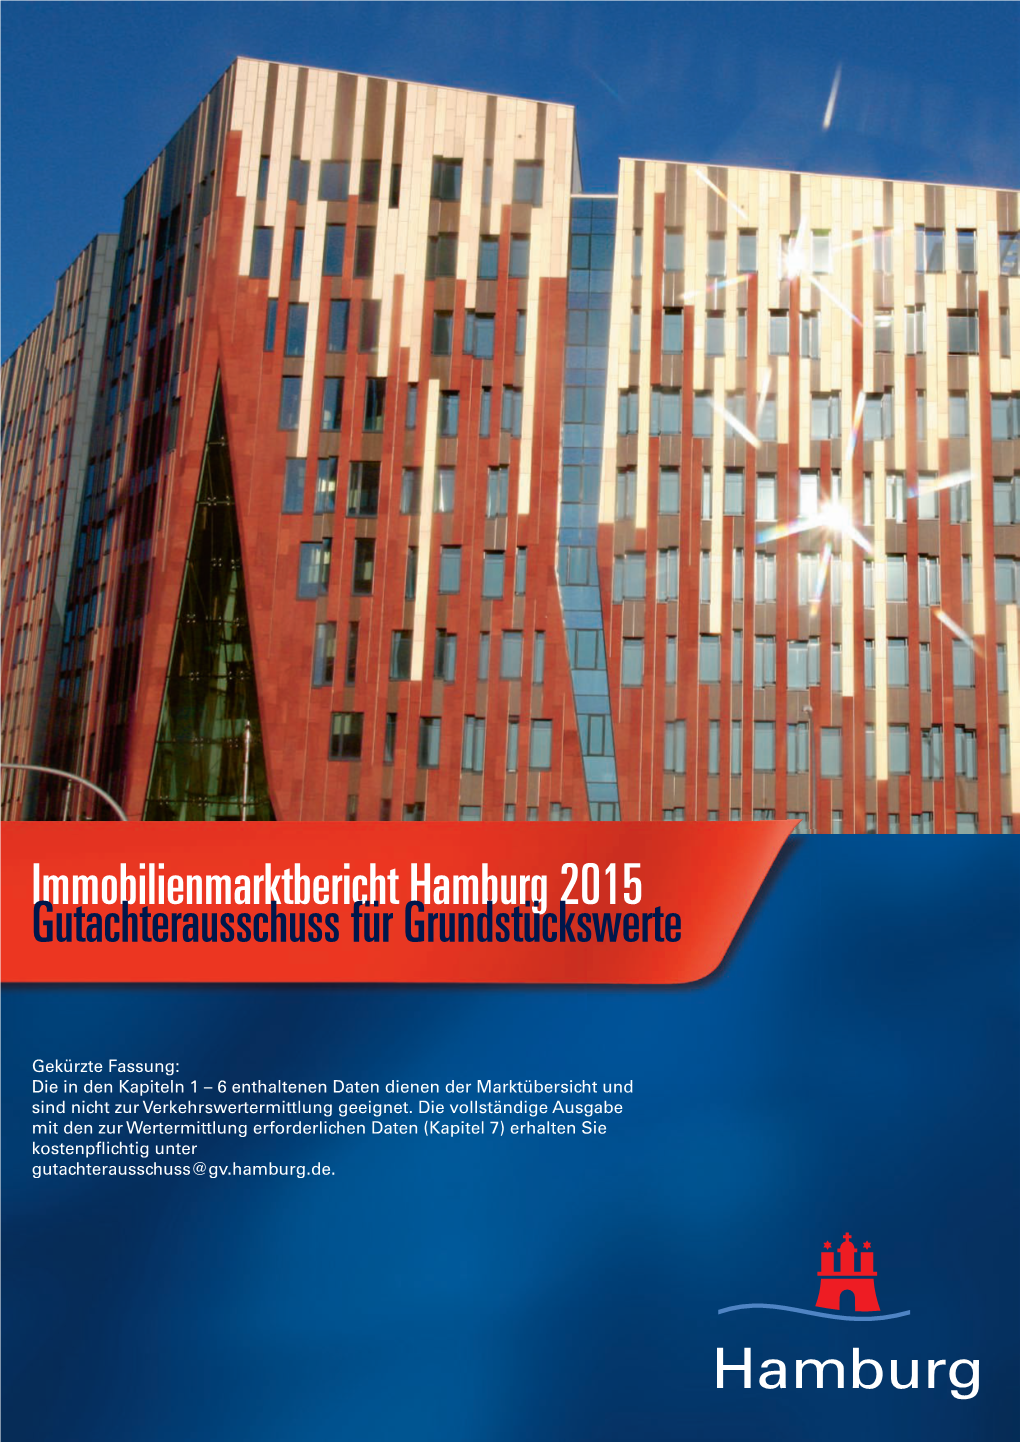 Immobilienmarktbericht Hamburg 2015 Gutachterausschuss Für Grundstückswerte